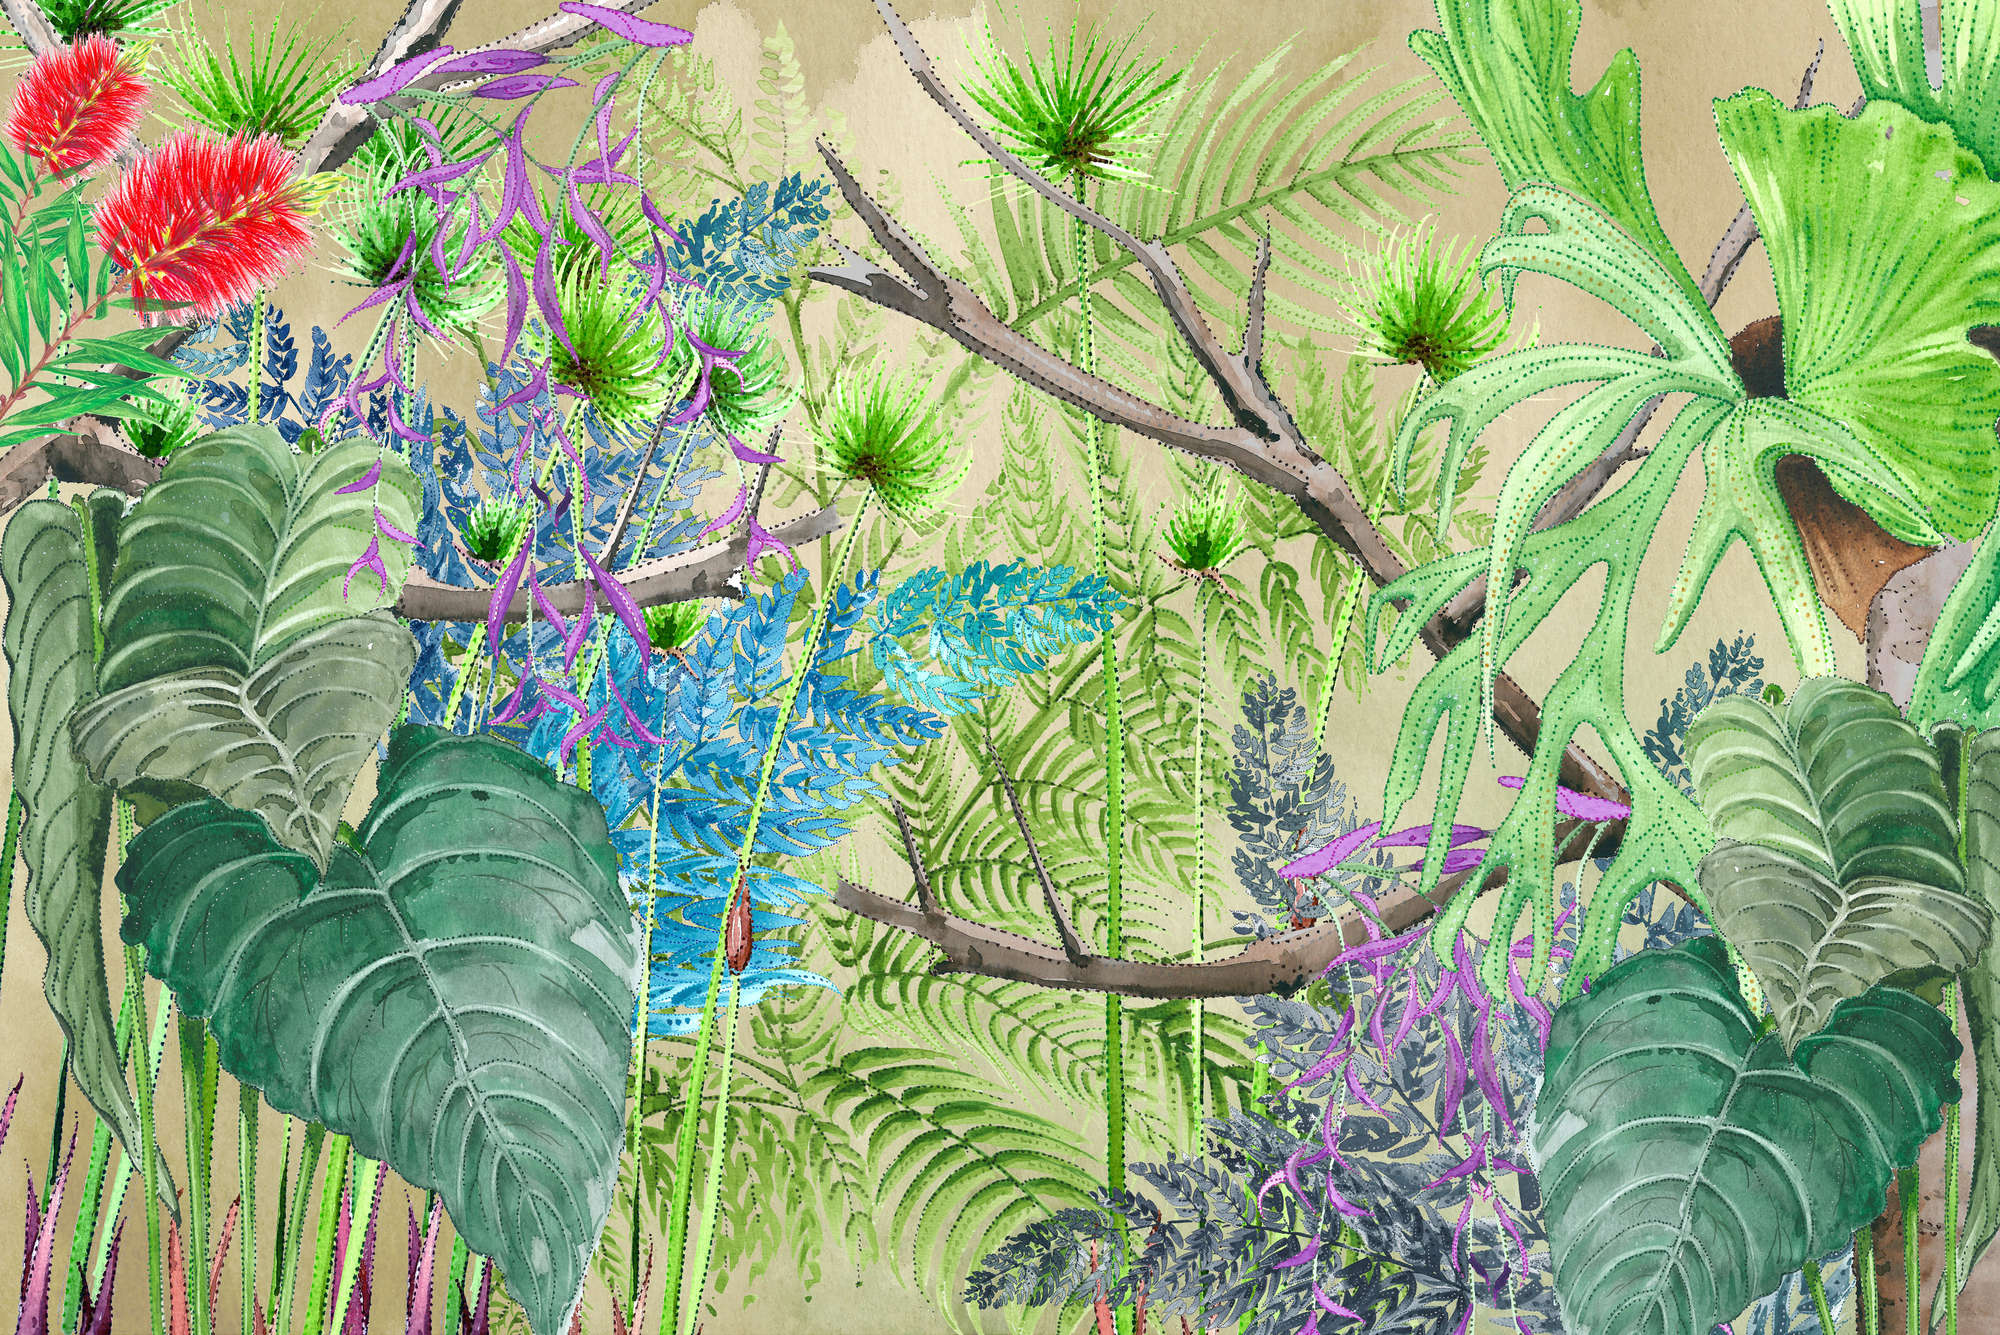             Dschungel Fototapete mit Blumen in Blau und Grün auf Matt Glattvlies
        